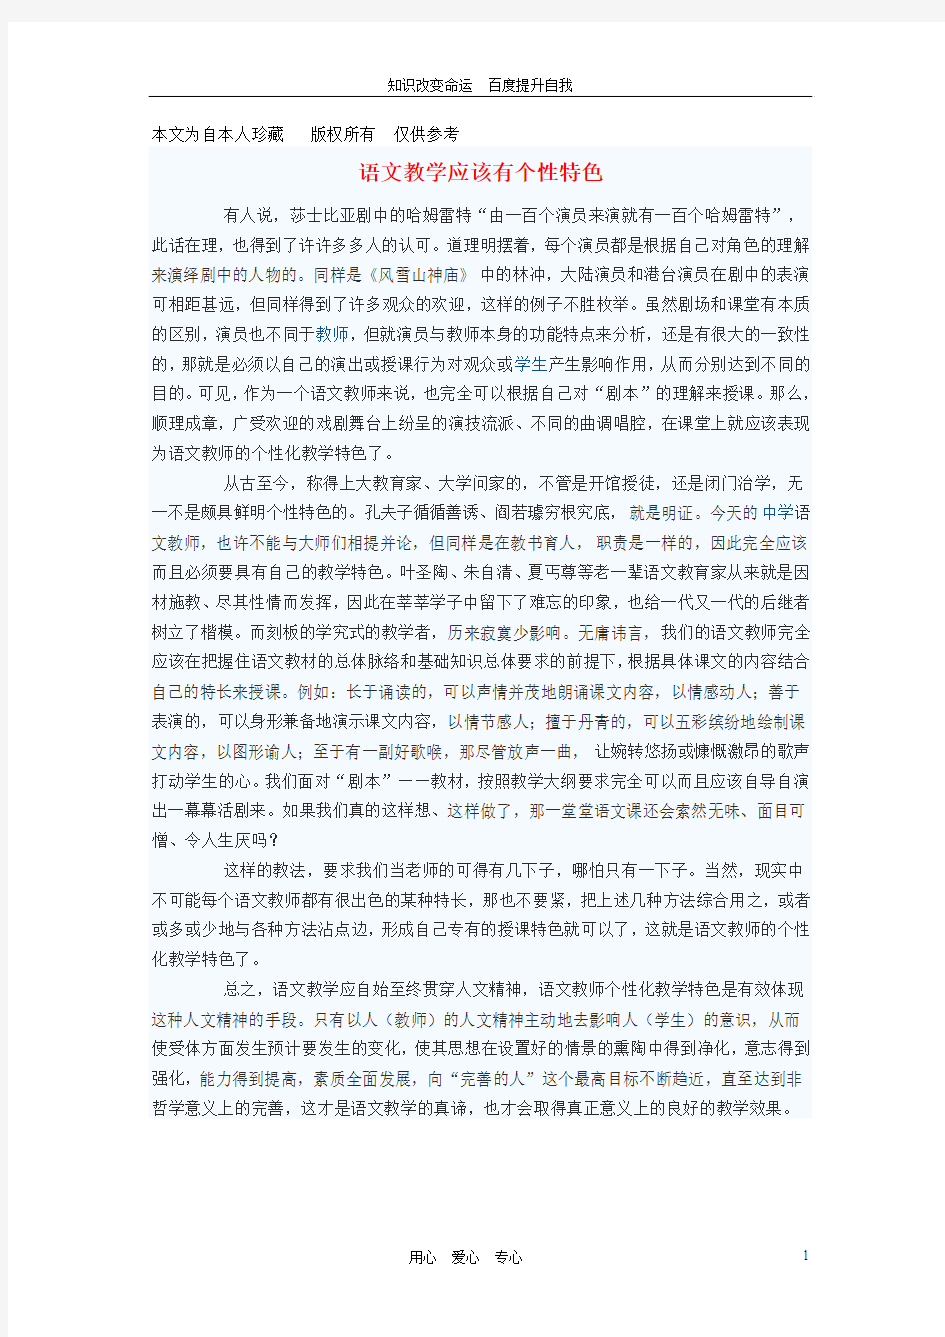 (no.1)初中语文教学论文 语文教学应该有个性特色